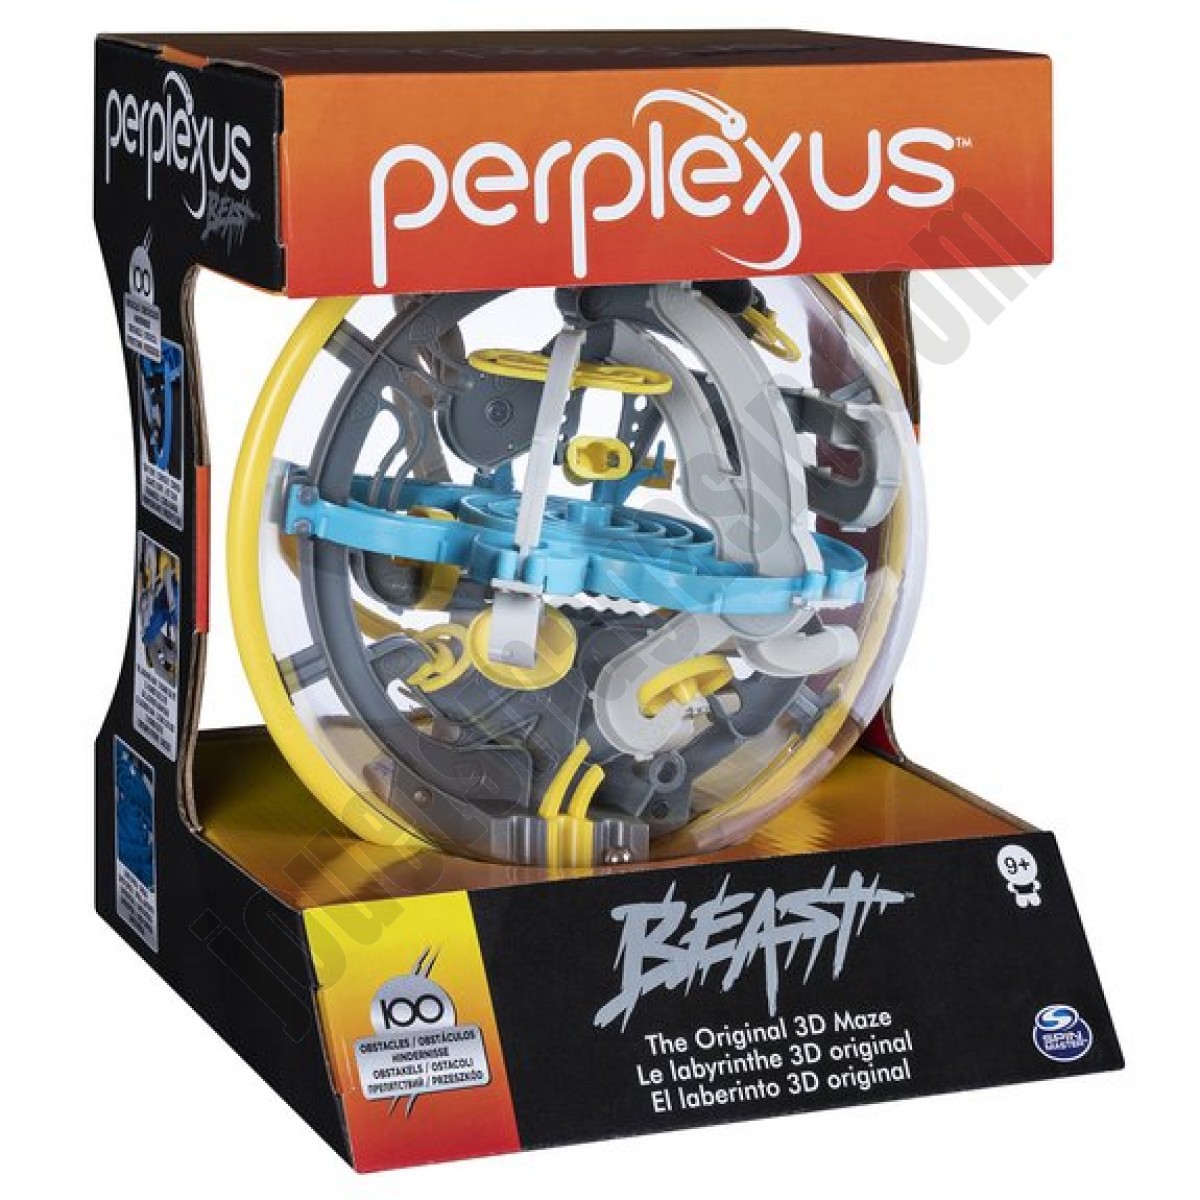 Perplexus Beast original ◆◆◆ Nouveau - Perplexus Beast original ◆◆◆ Nouveau